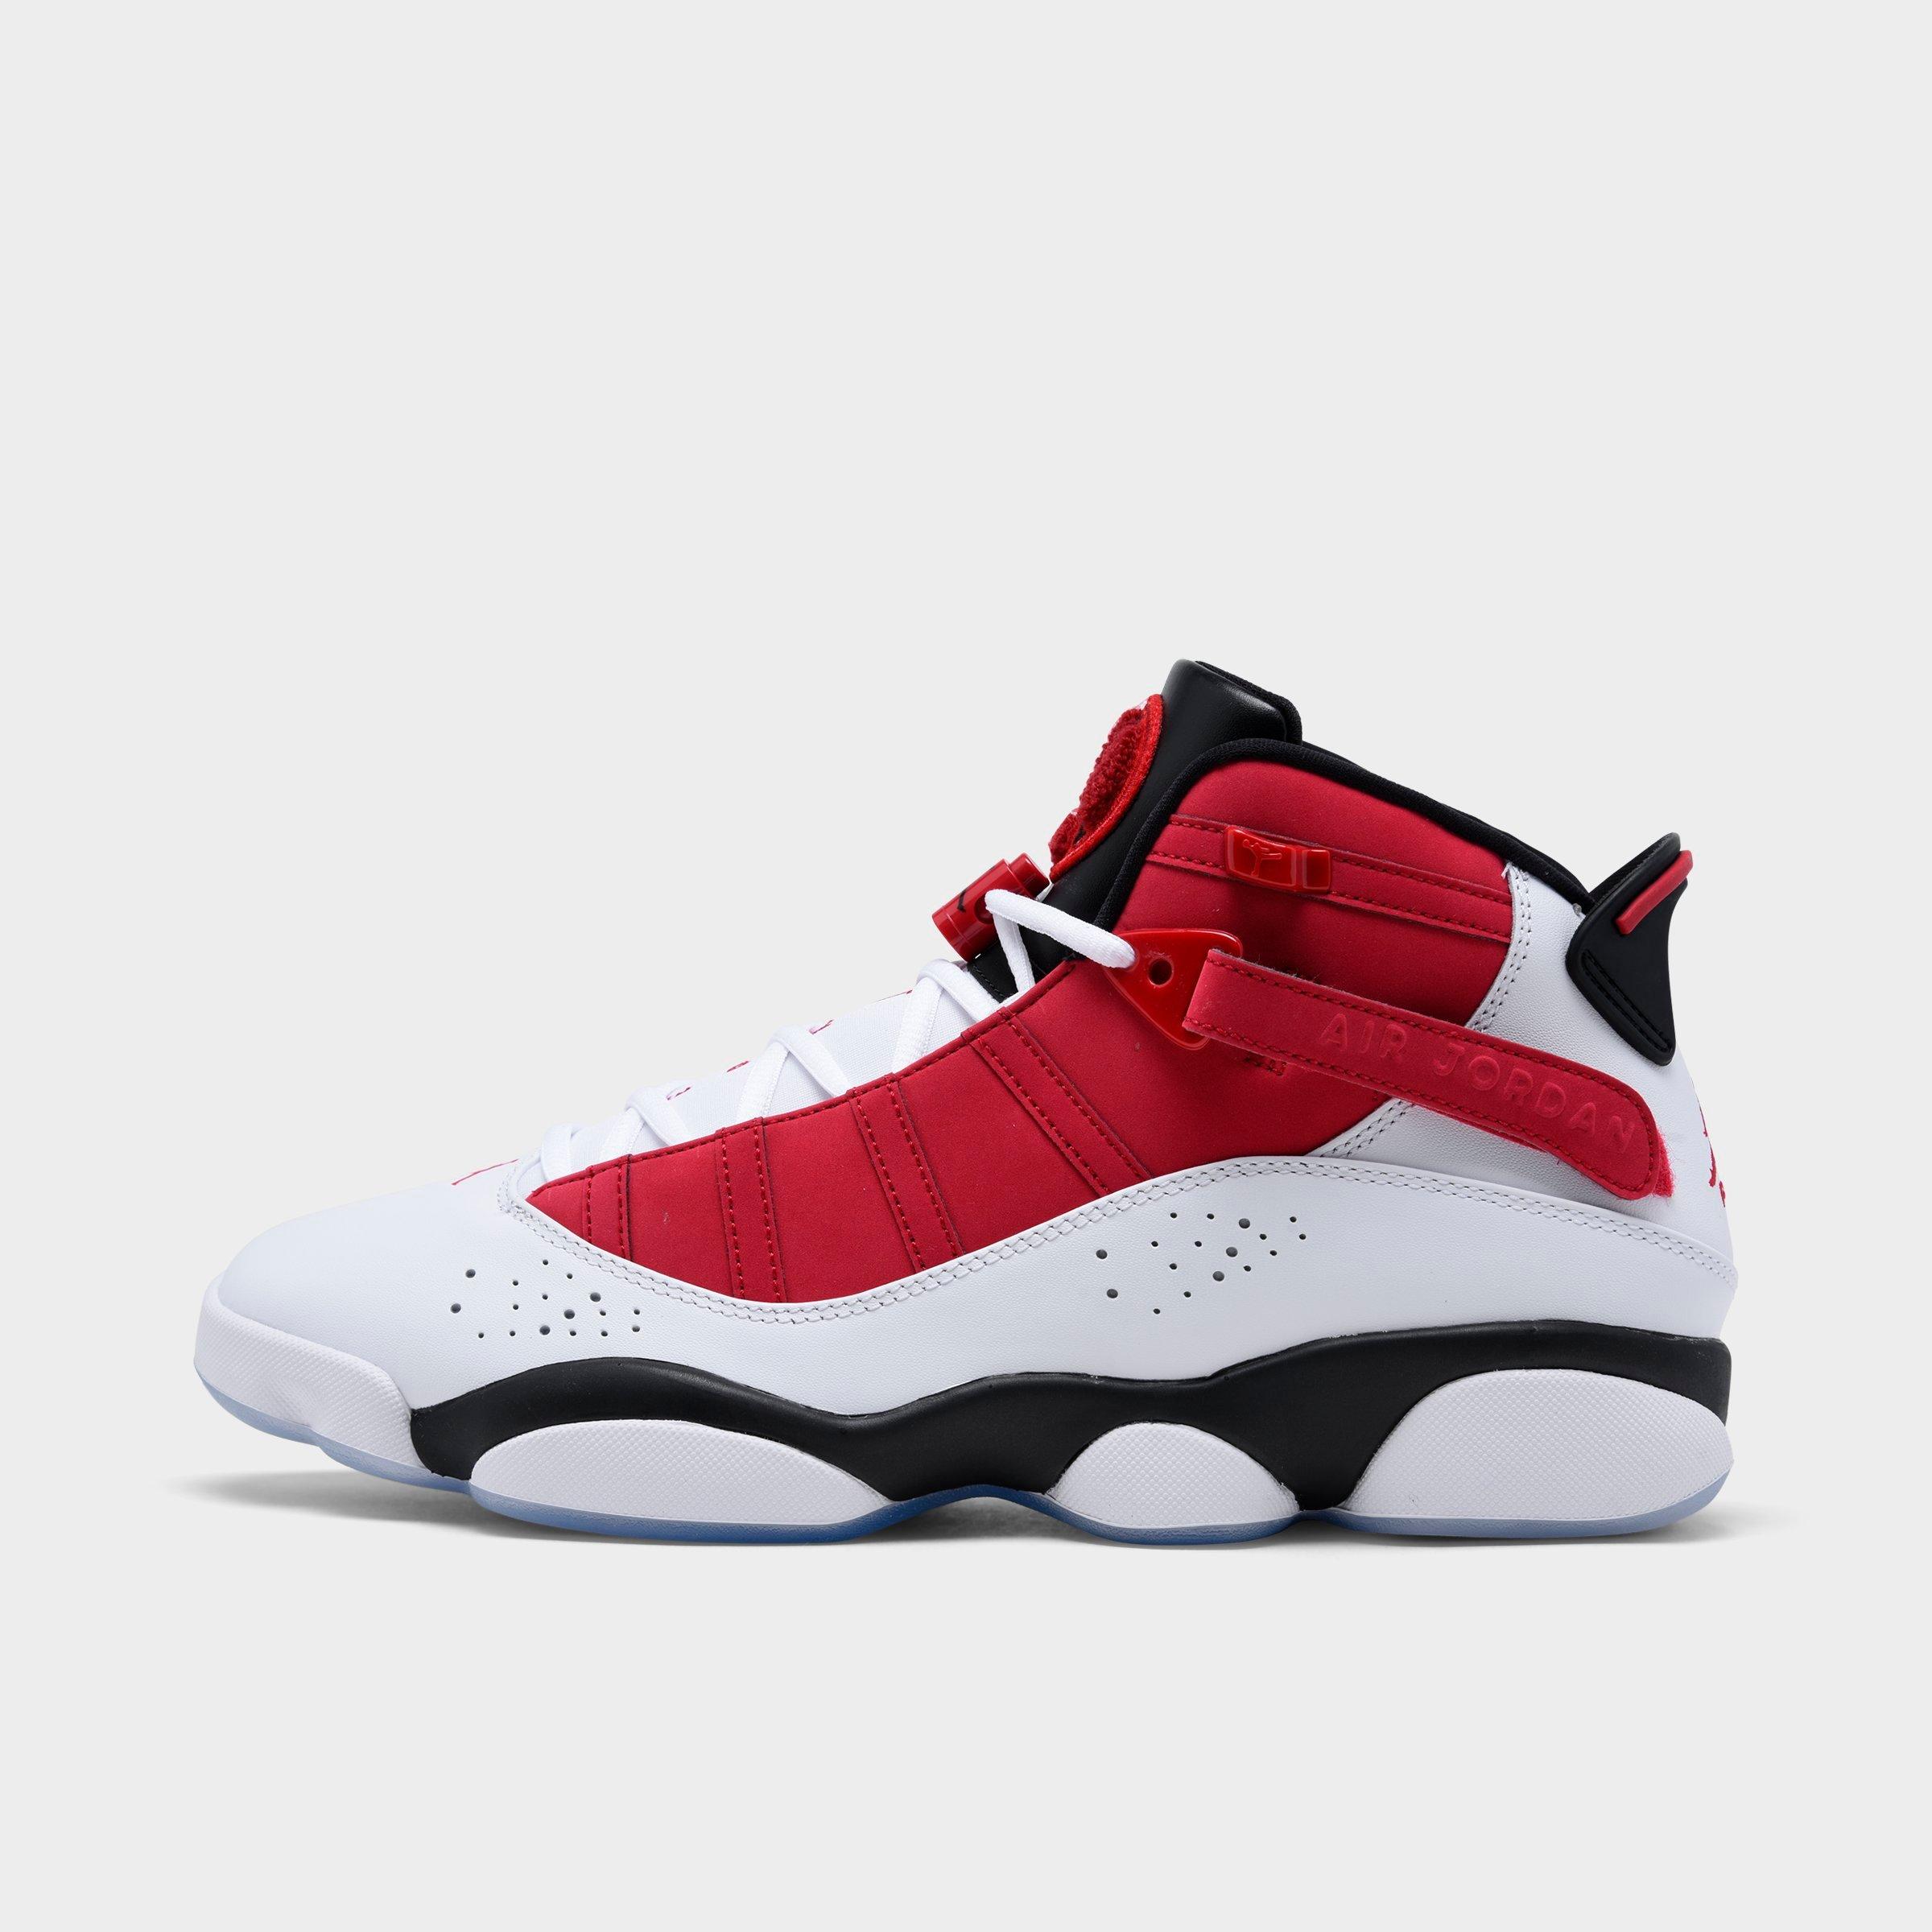 Jordan Retro Shoes | Air Jordan Retro 